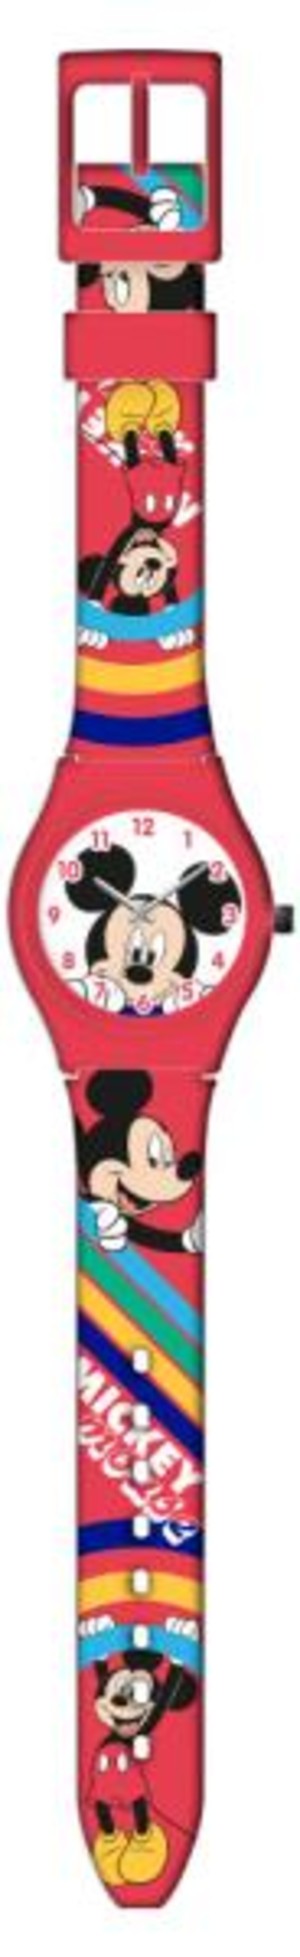 Zegarek analogowy w metalowym opakowaniu Myszka Miki